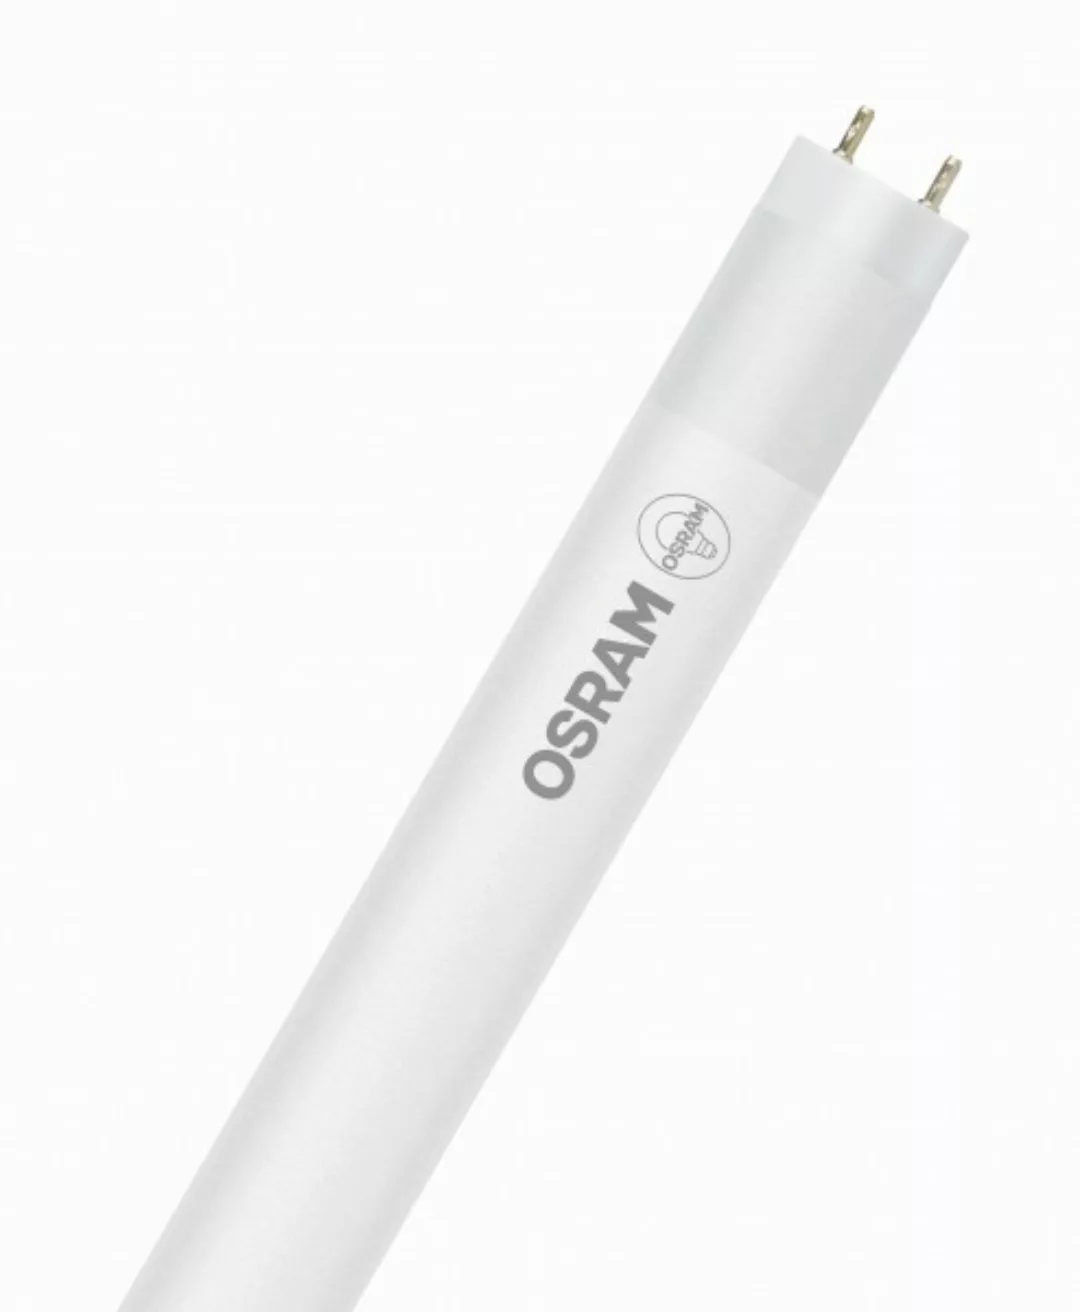 OSRAM LED RÖHRE SUBSTITUBE T8 STAR+ ST8SP-1.5M-830 EM FS K Warmweiß Matt G1 günstig online kaufen